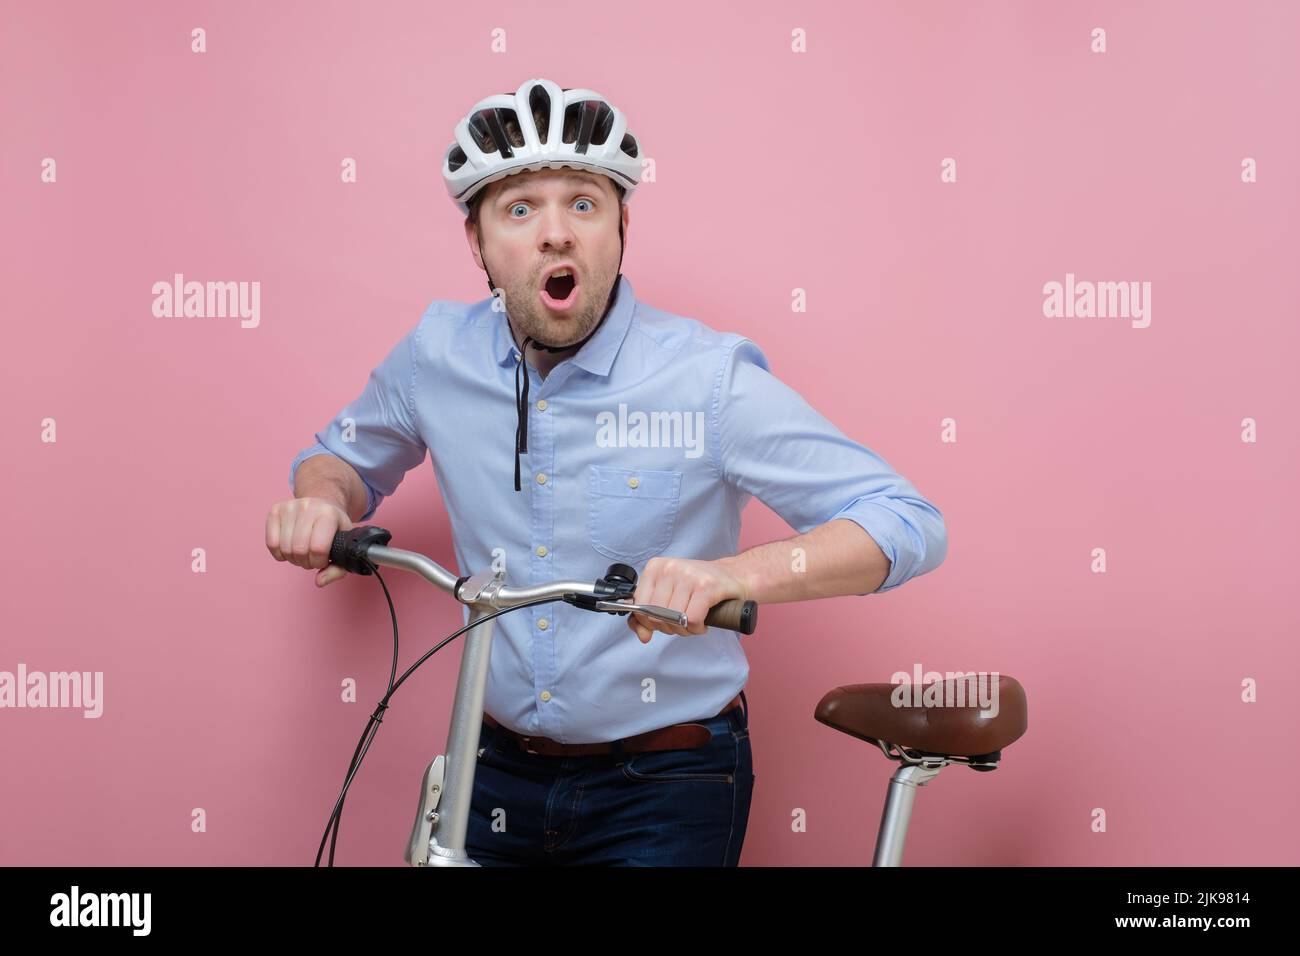 Hombre caucásico sorprendido con casco en bicicleta sobre fondo rosa Foto de stock